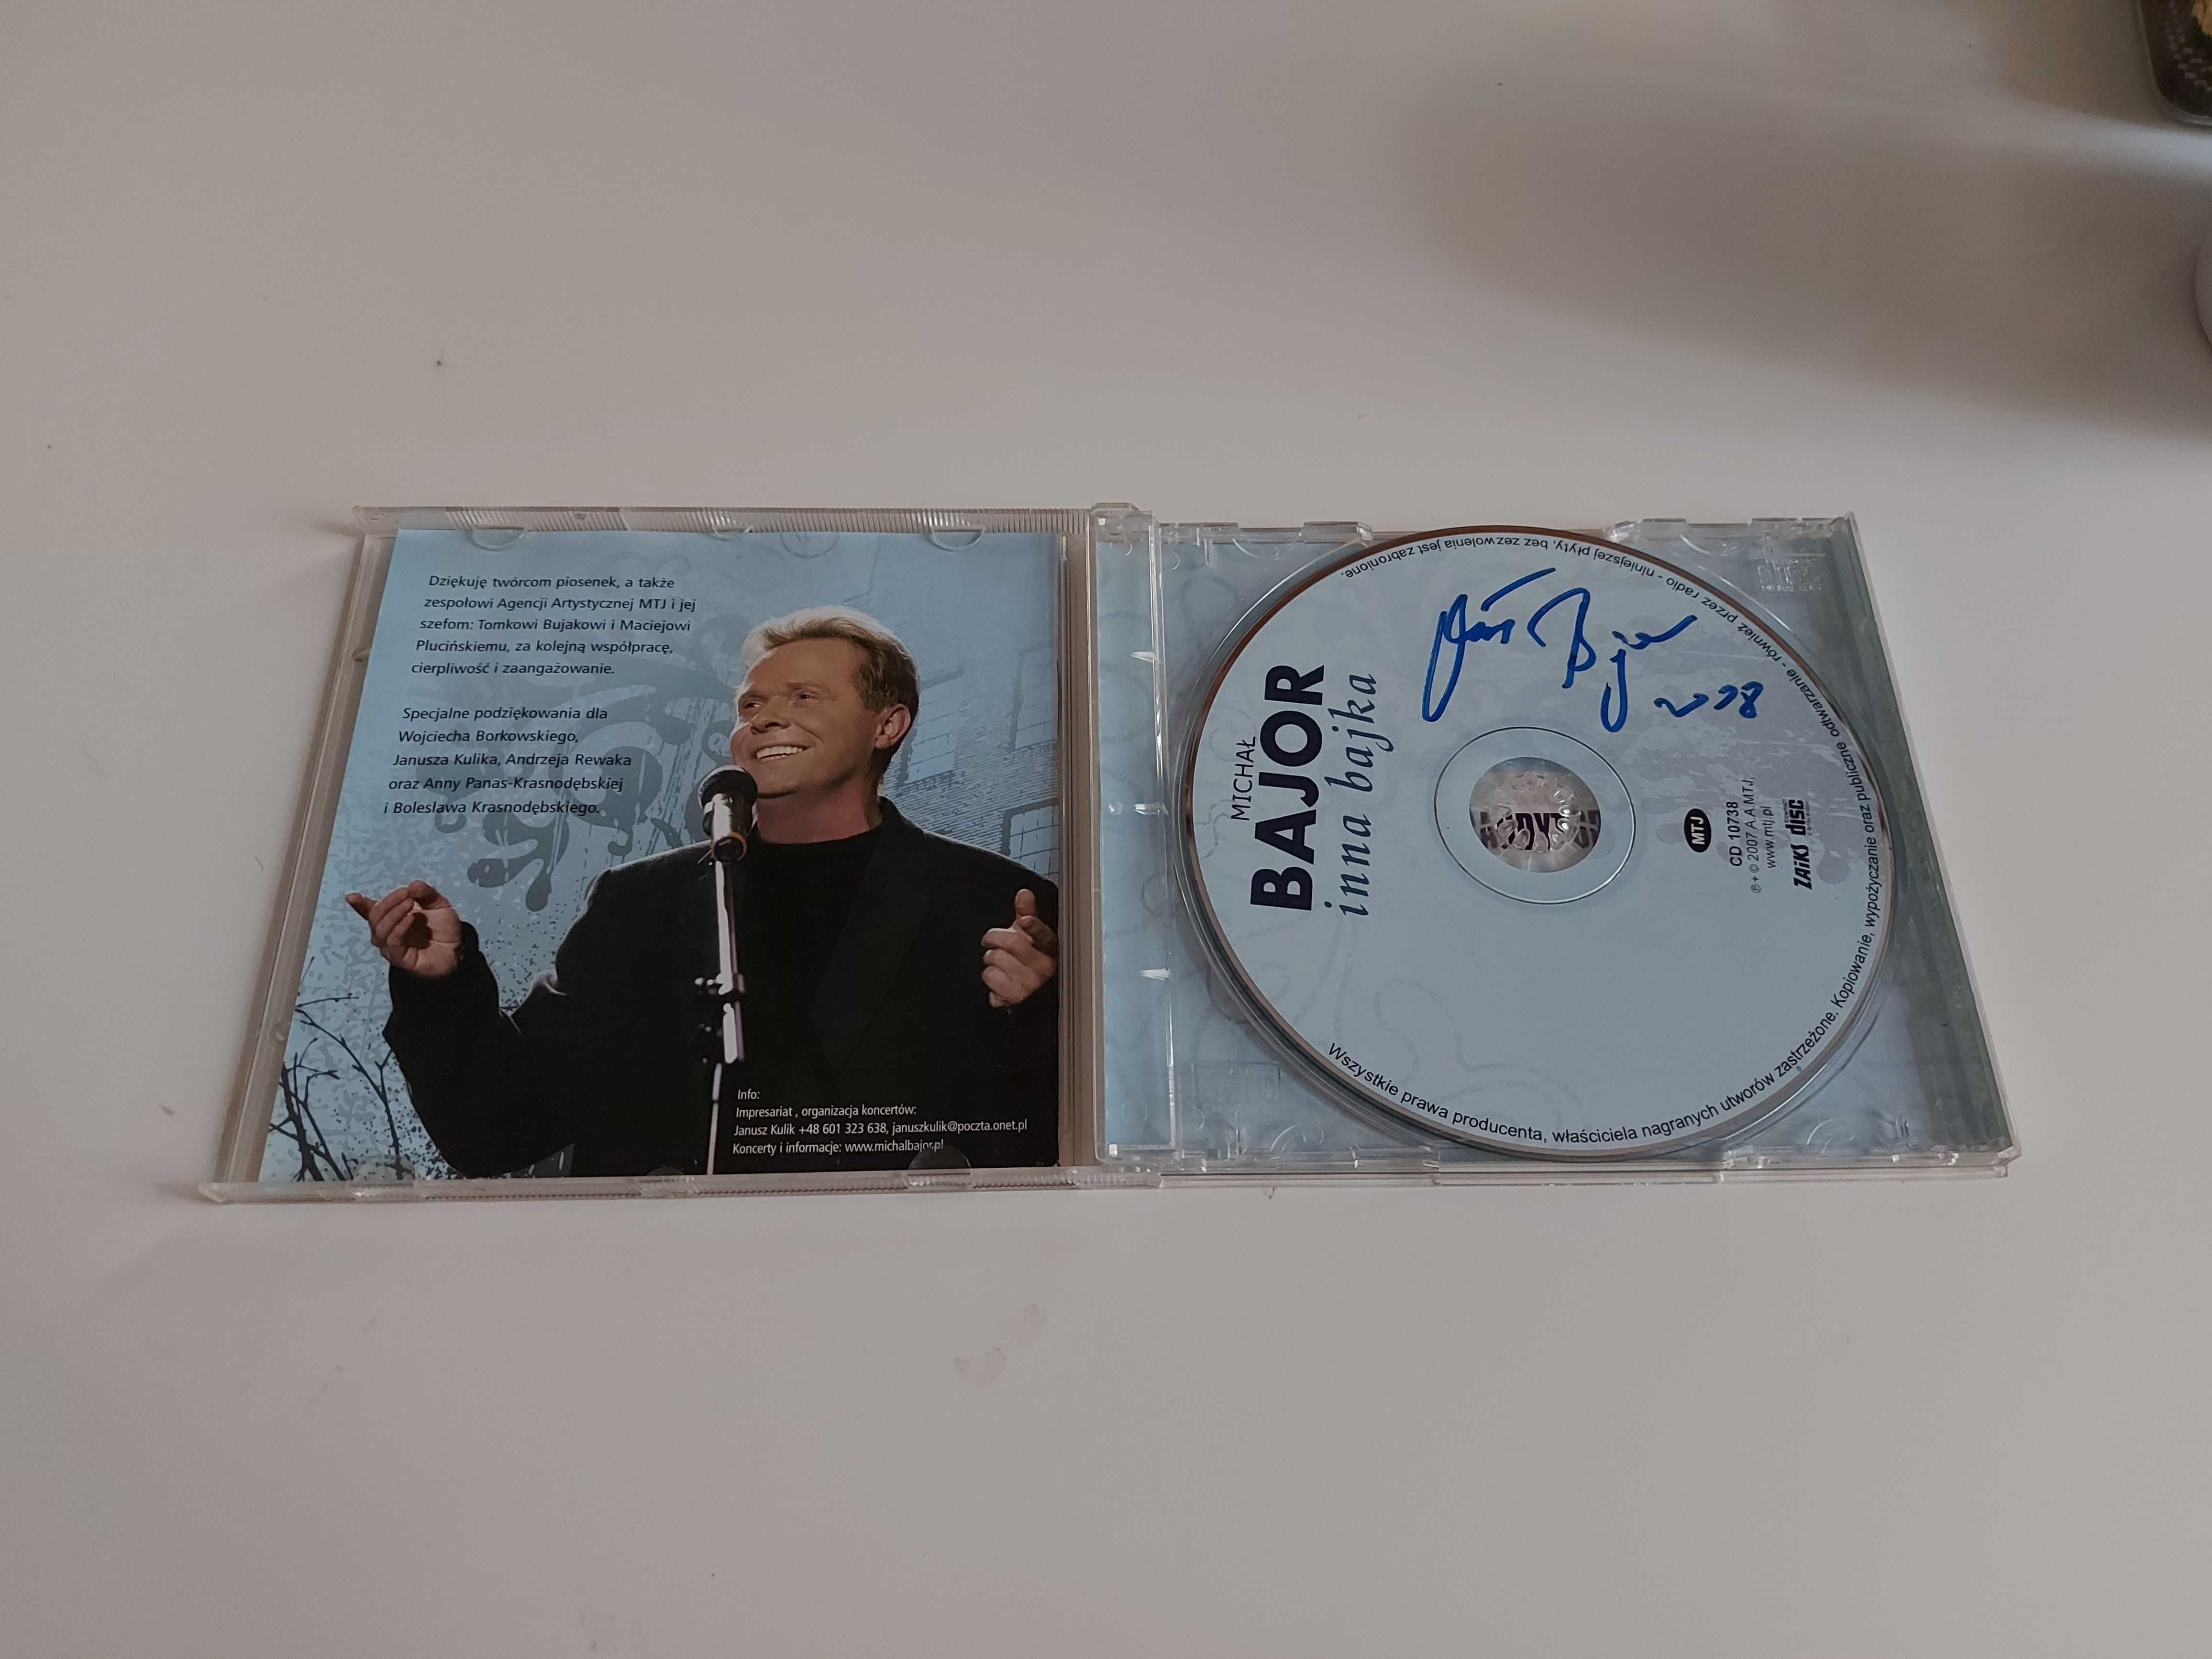 Michał Bajor 6 płyt CD z autografami